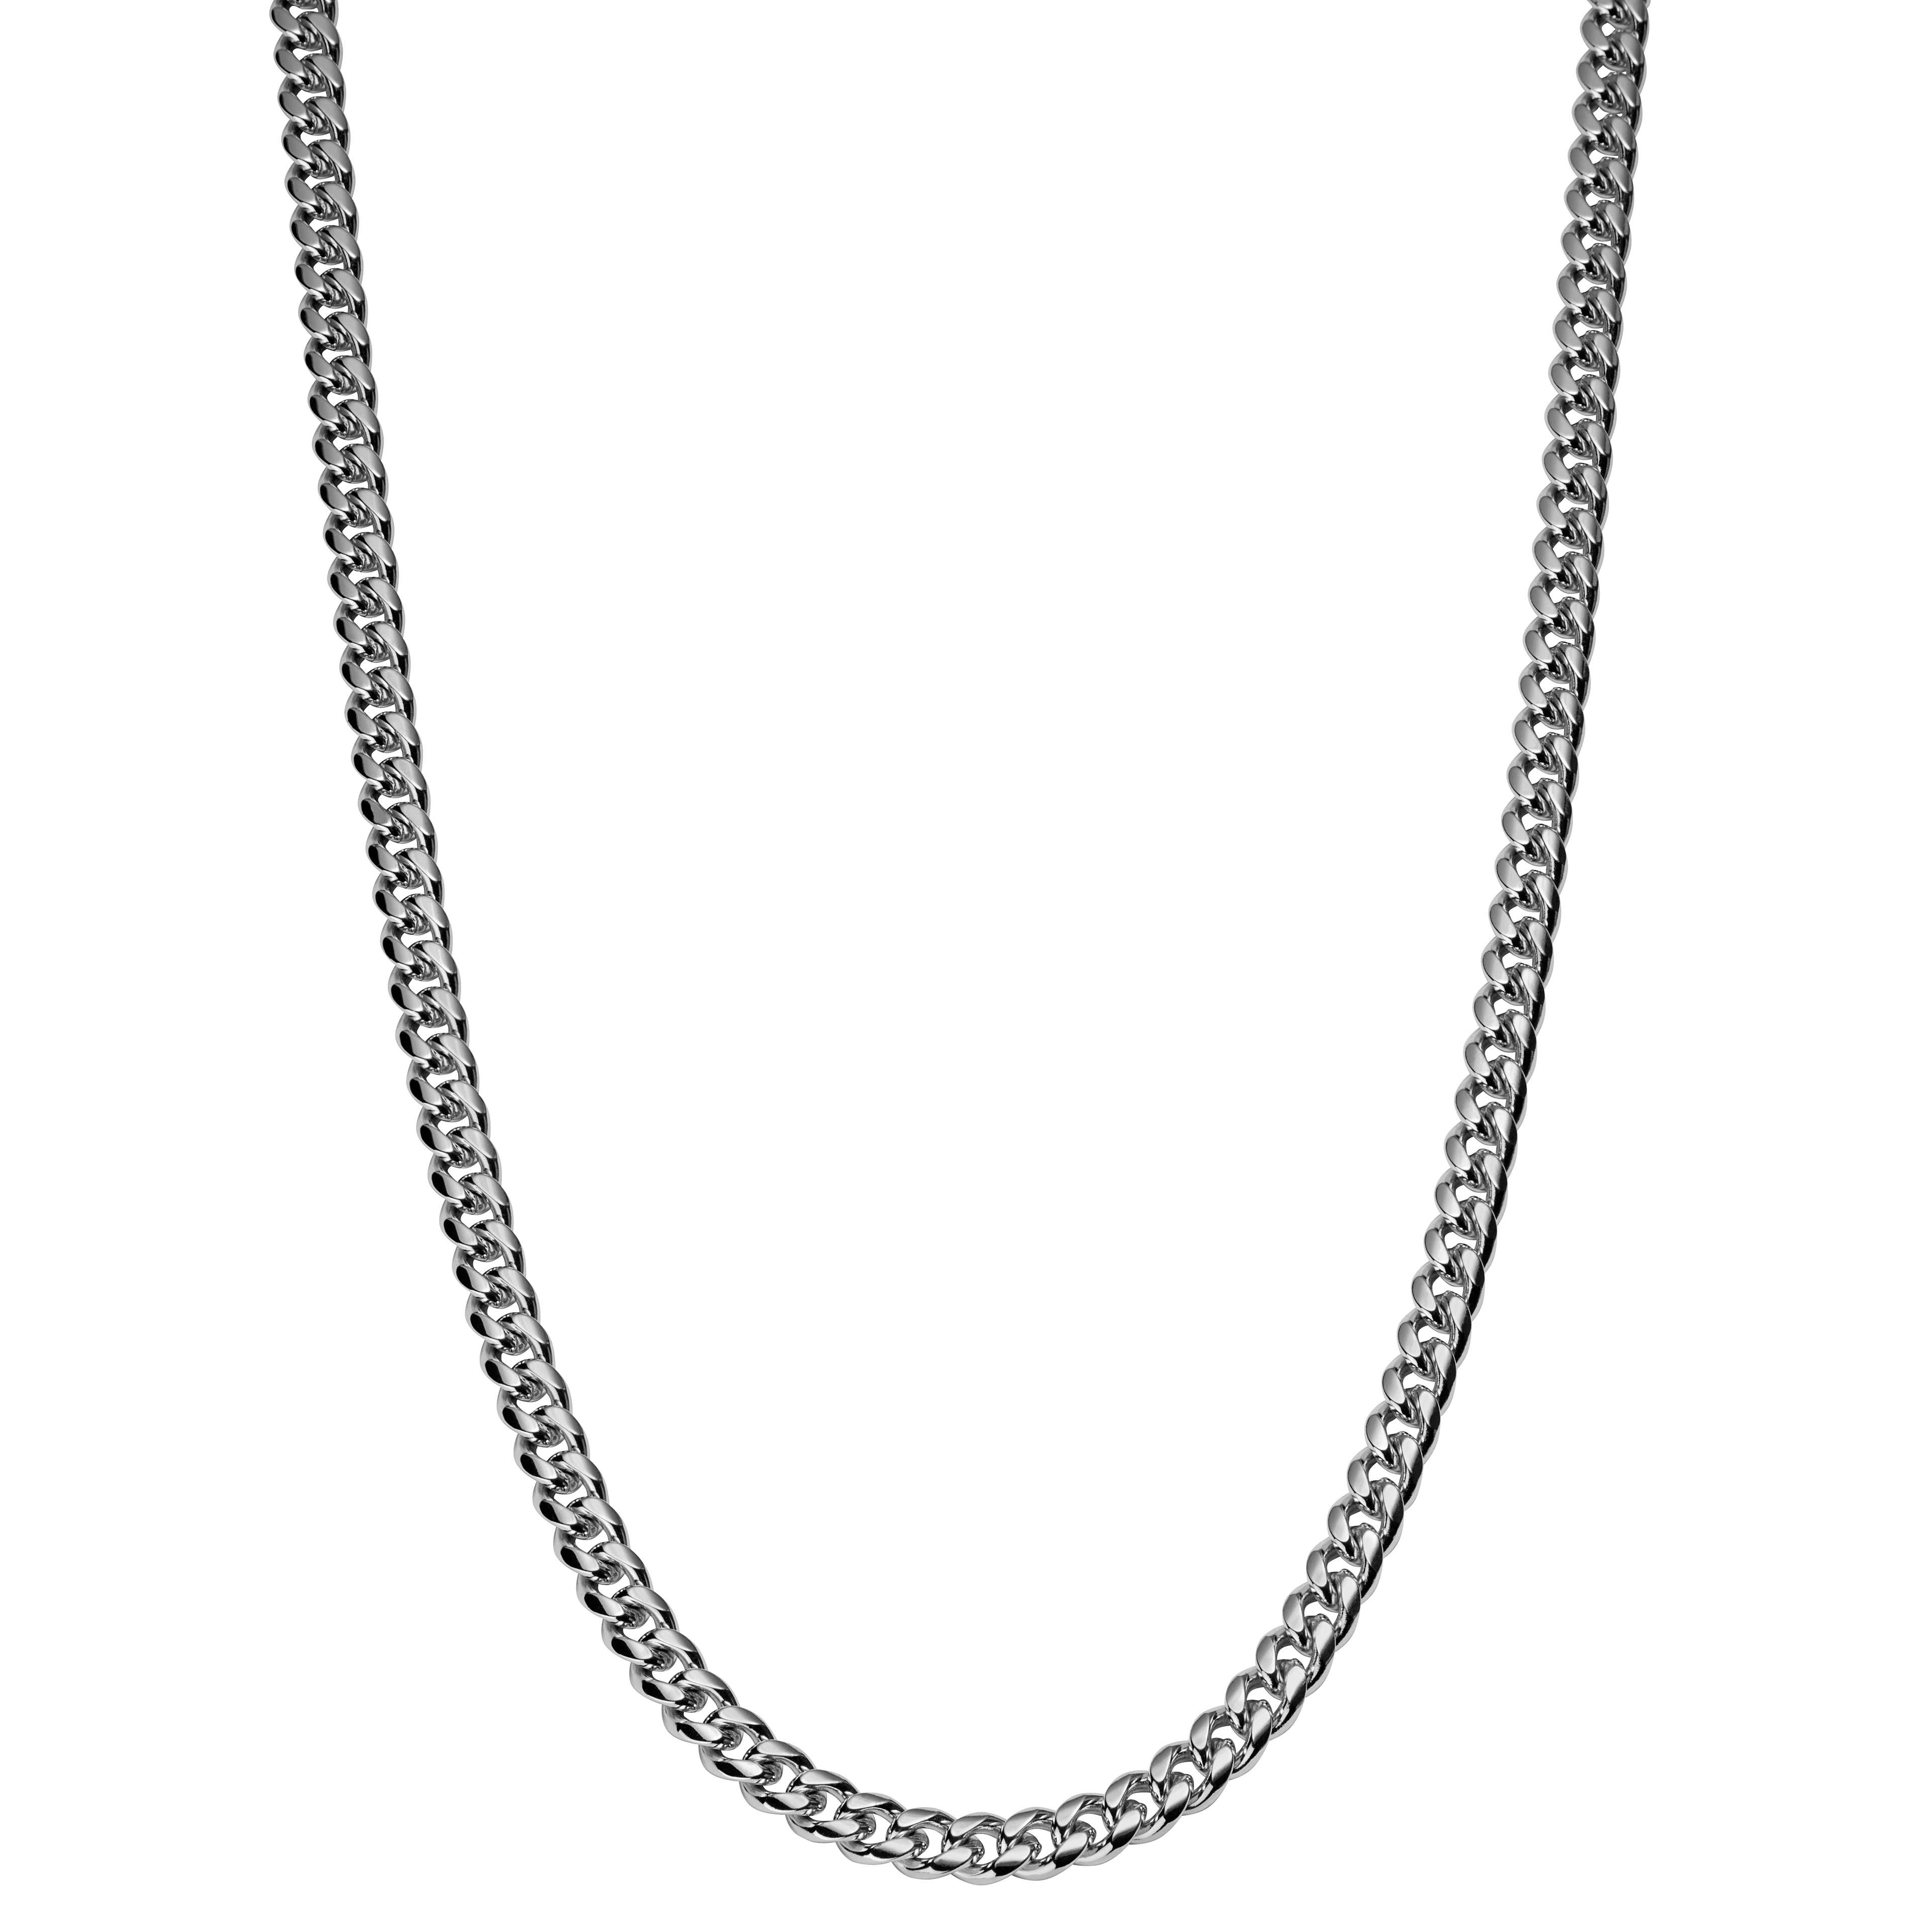 Łańcuszkowy naszyjnik w srebrnym tonie 6 mm